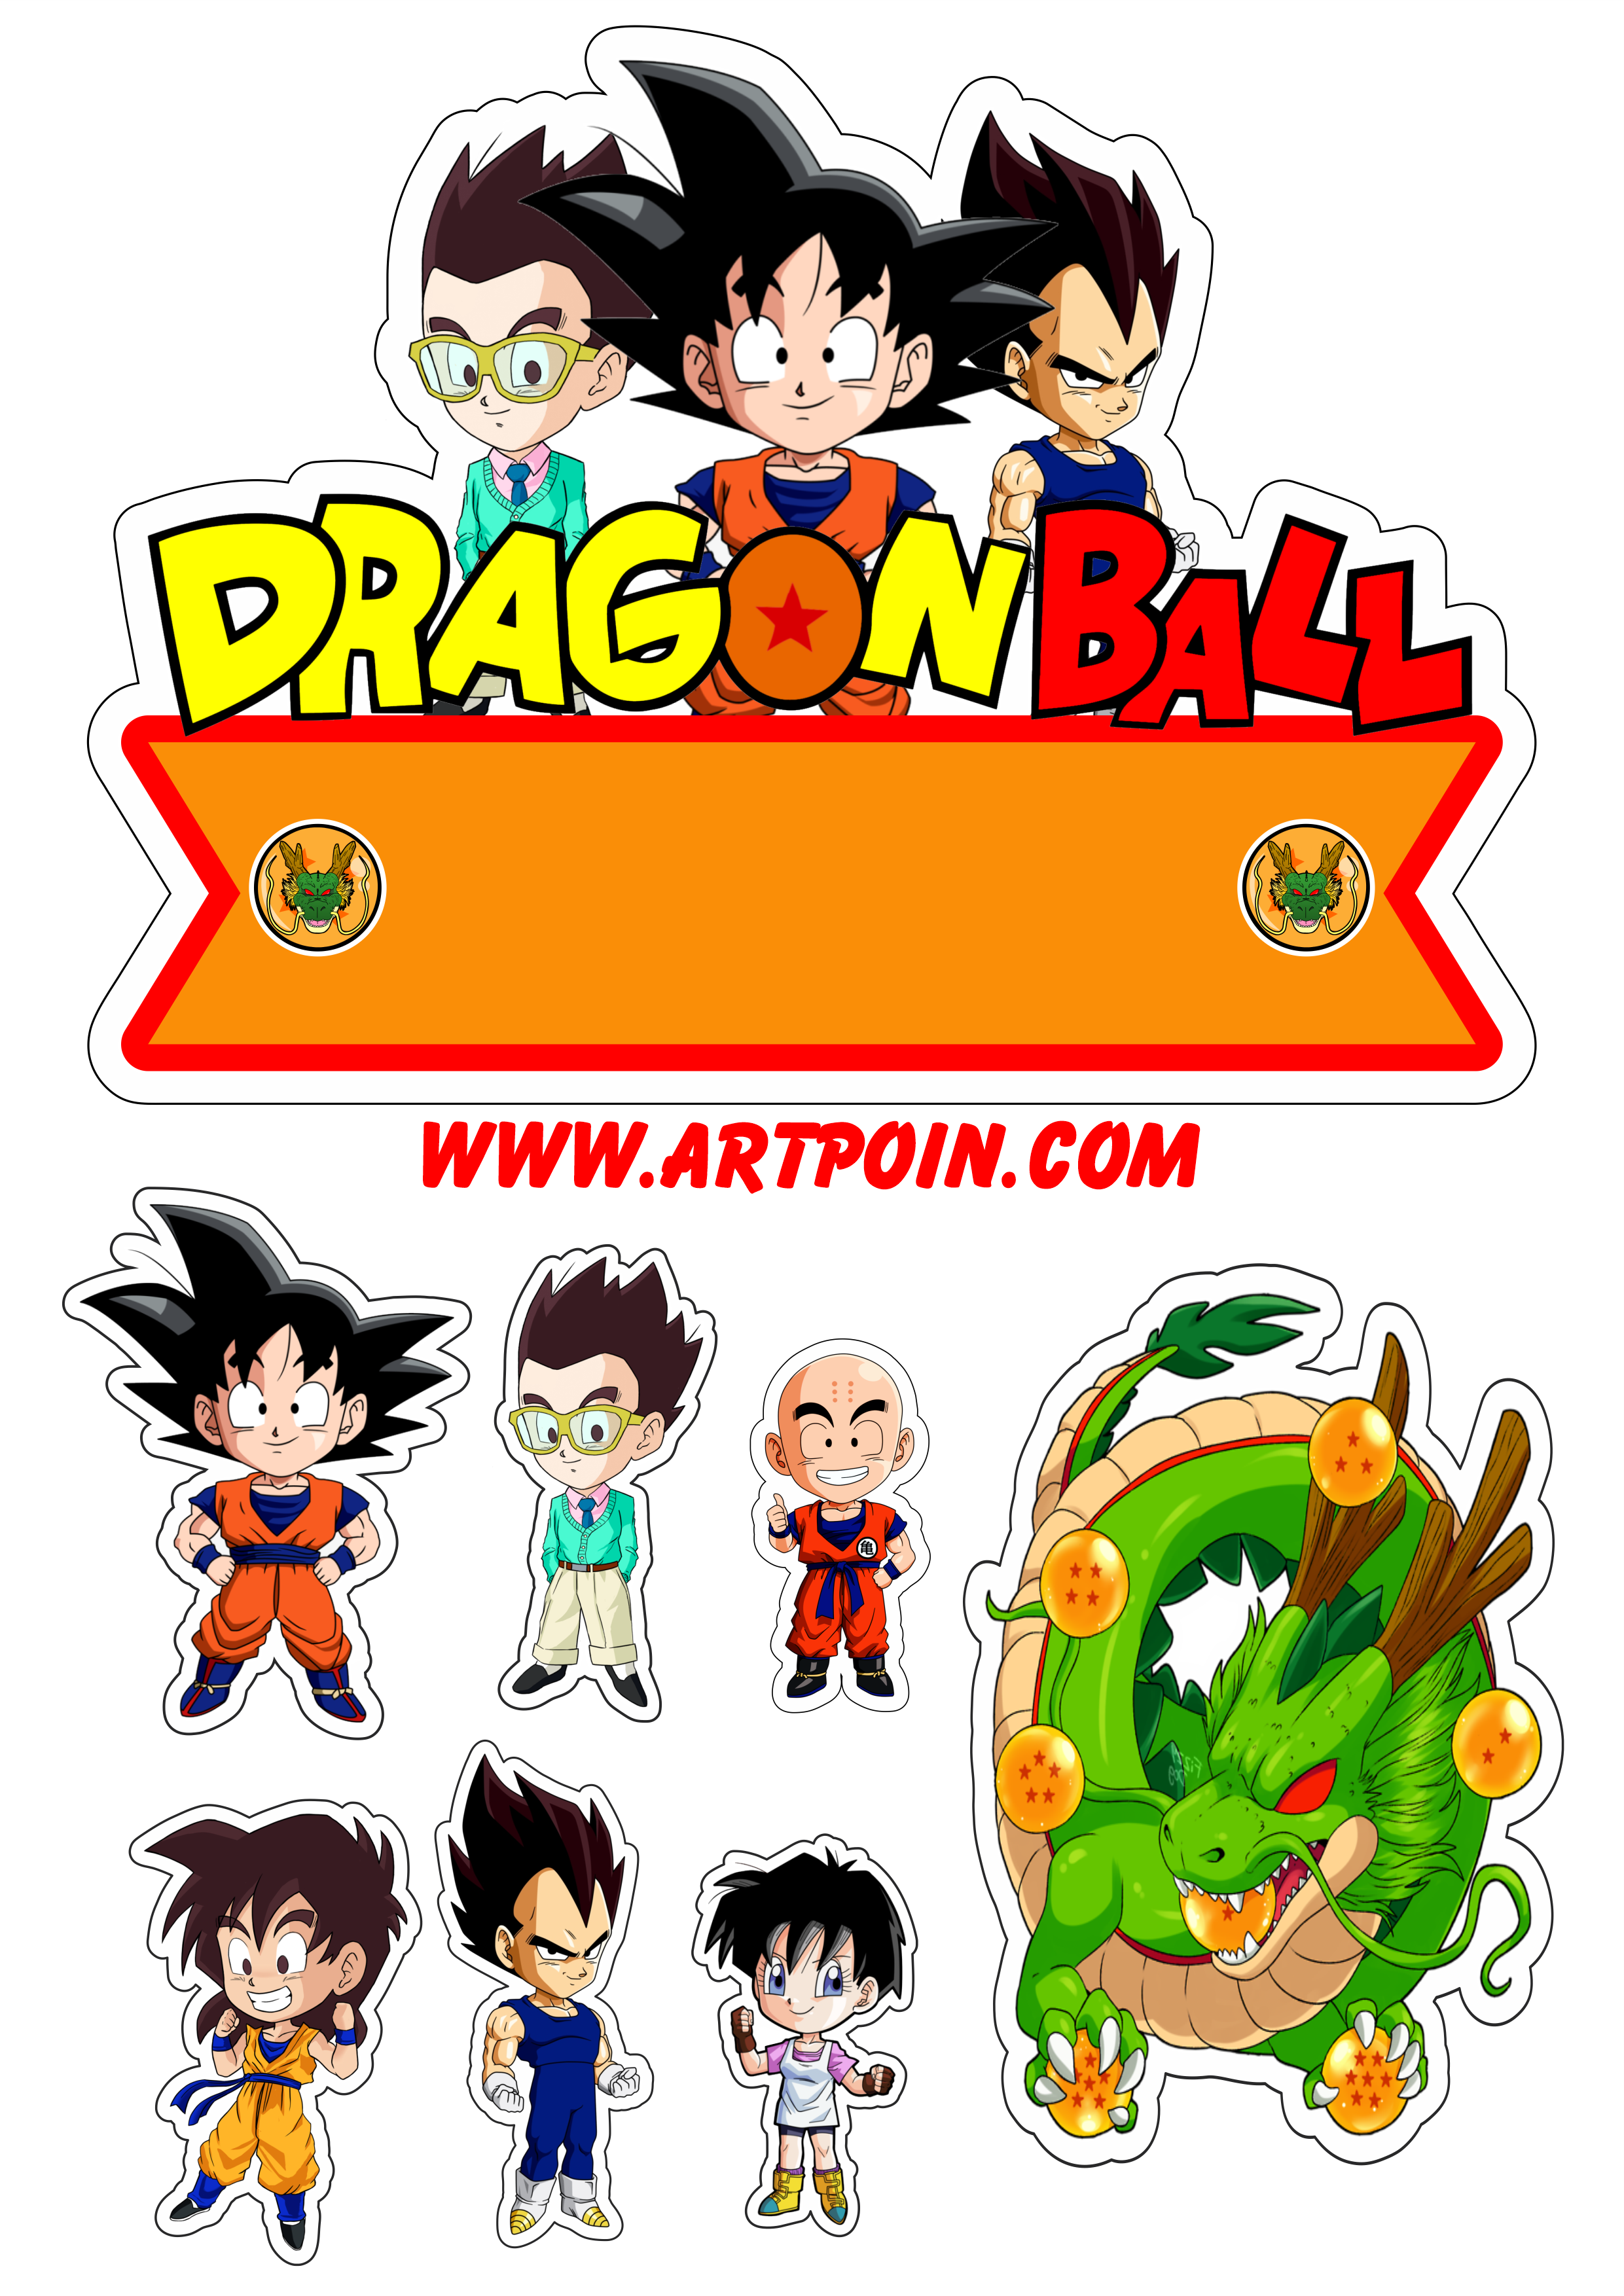 Dragon ball z super Goku guerreiros Z saga boo cute desenho infantil anime  fundo transparente pack de imagens png